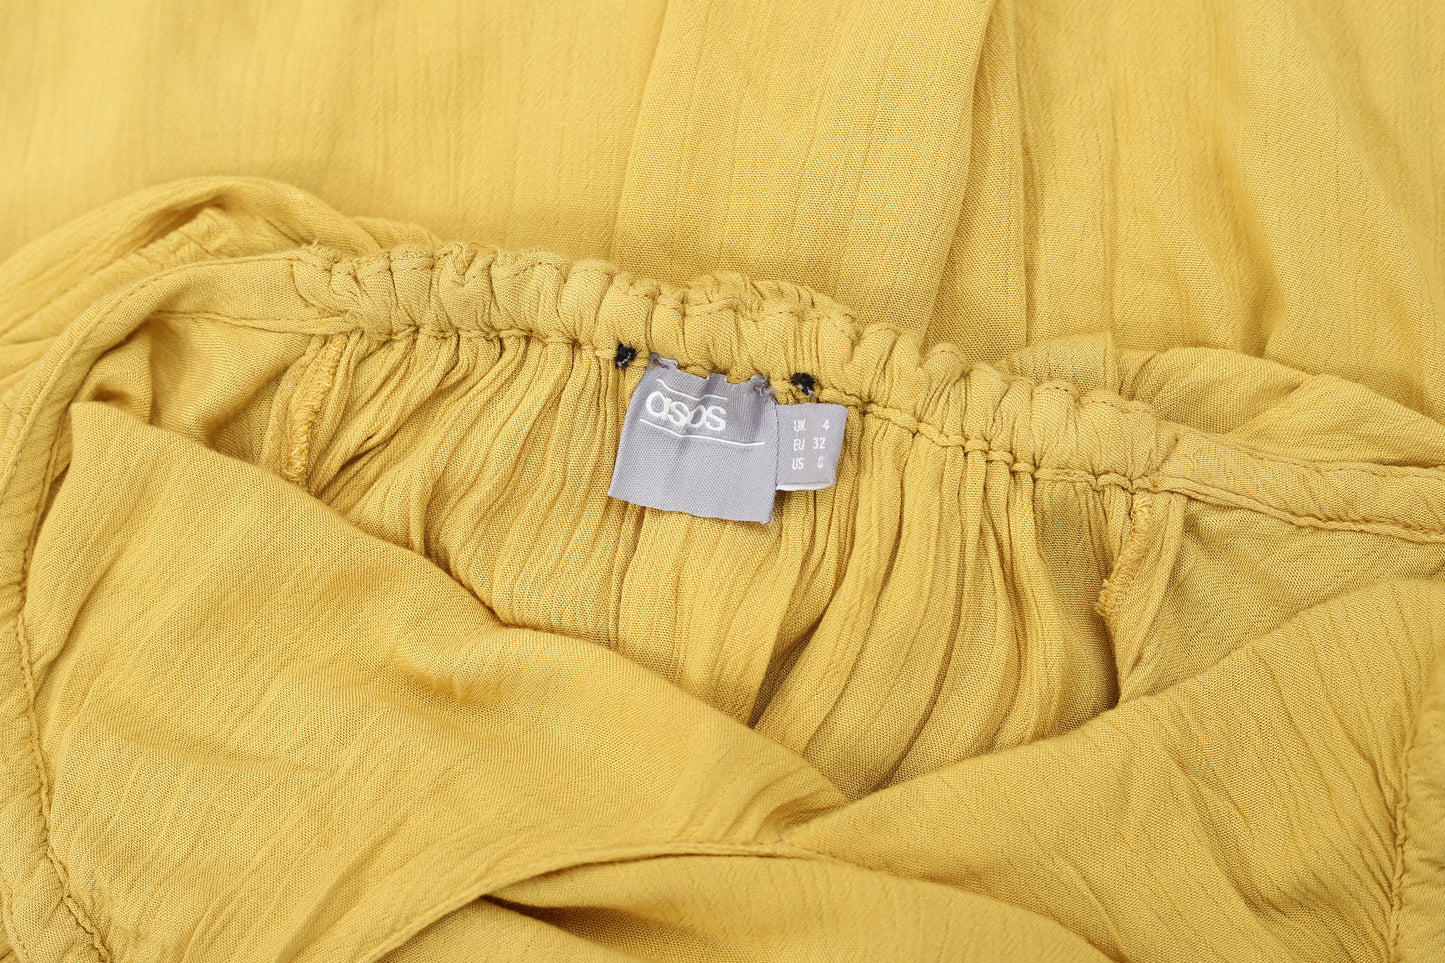 Asos Halter Tiered Yellow Maxi Dress XS-0